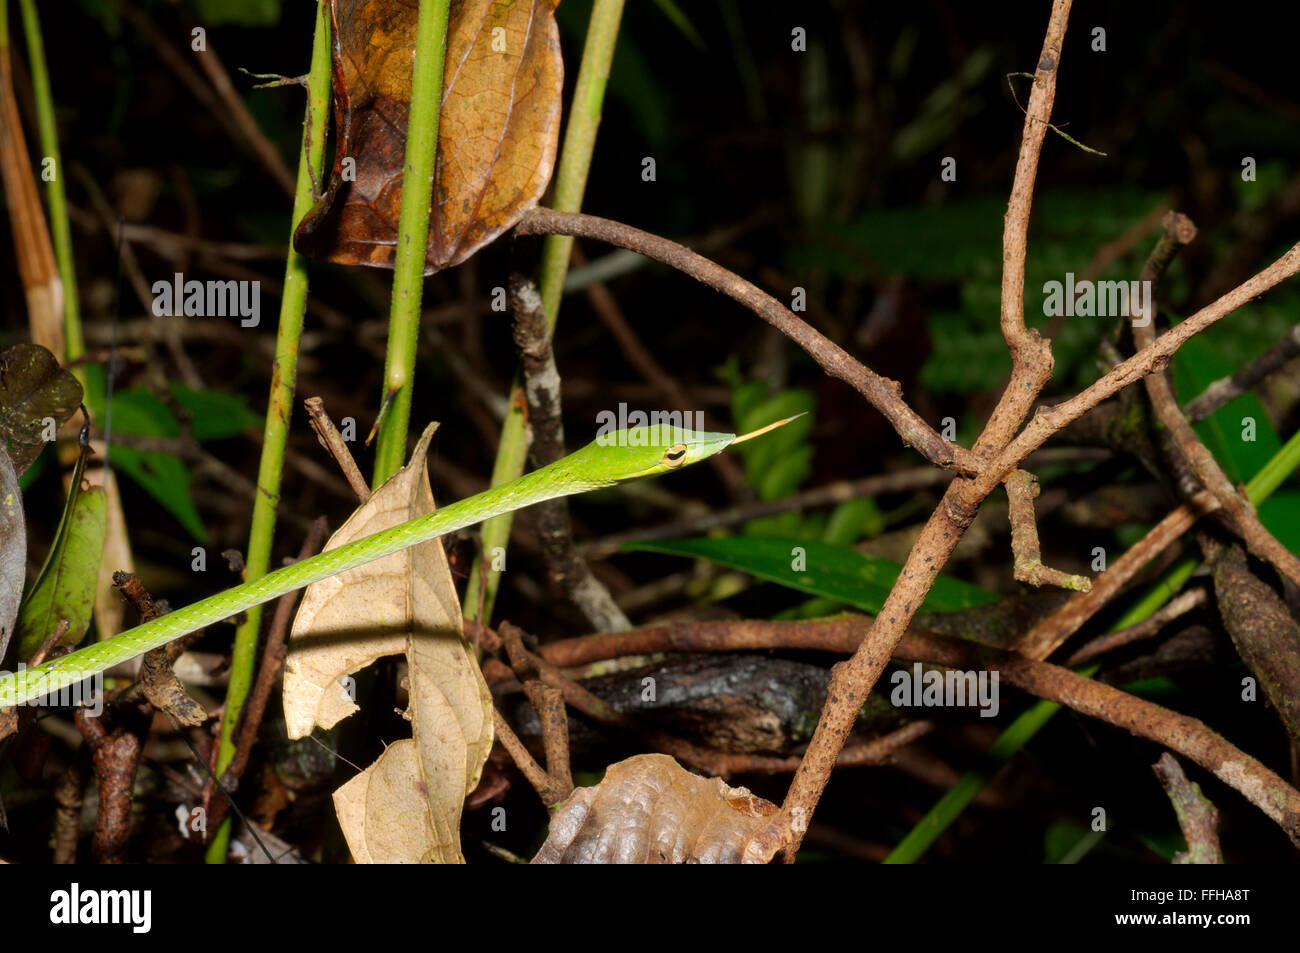 A becco lungo serpente ad albero, vitigno verde serpente a becco lungo serpente frusta o Asian vine snake (Ahaetulla nasuta) riserva forestale di Sinharaja, Foto Stock